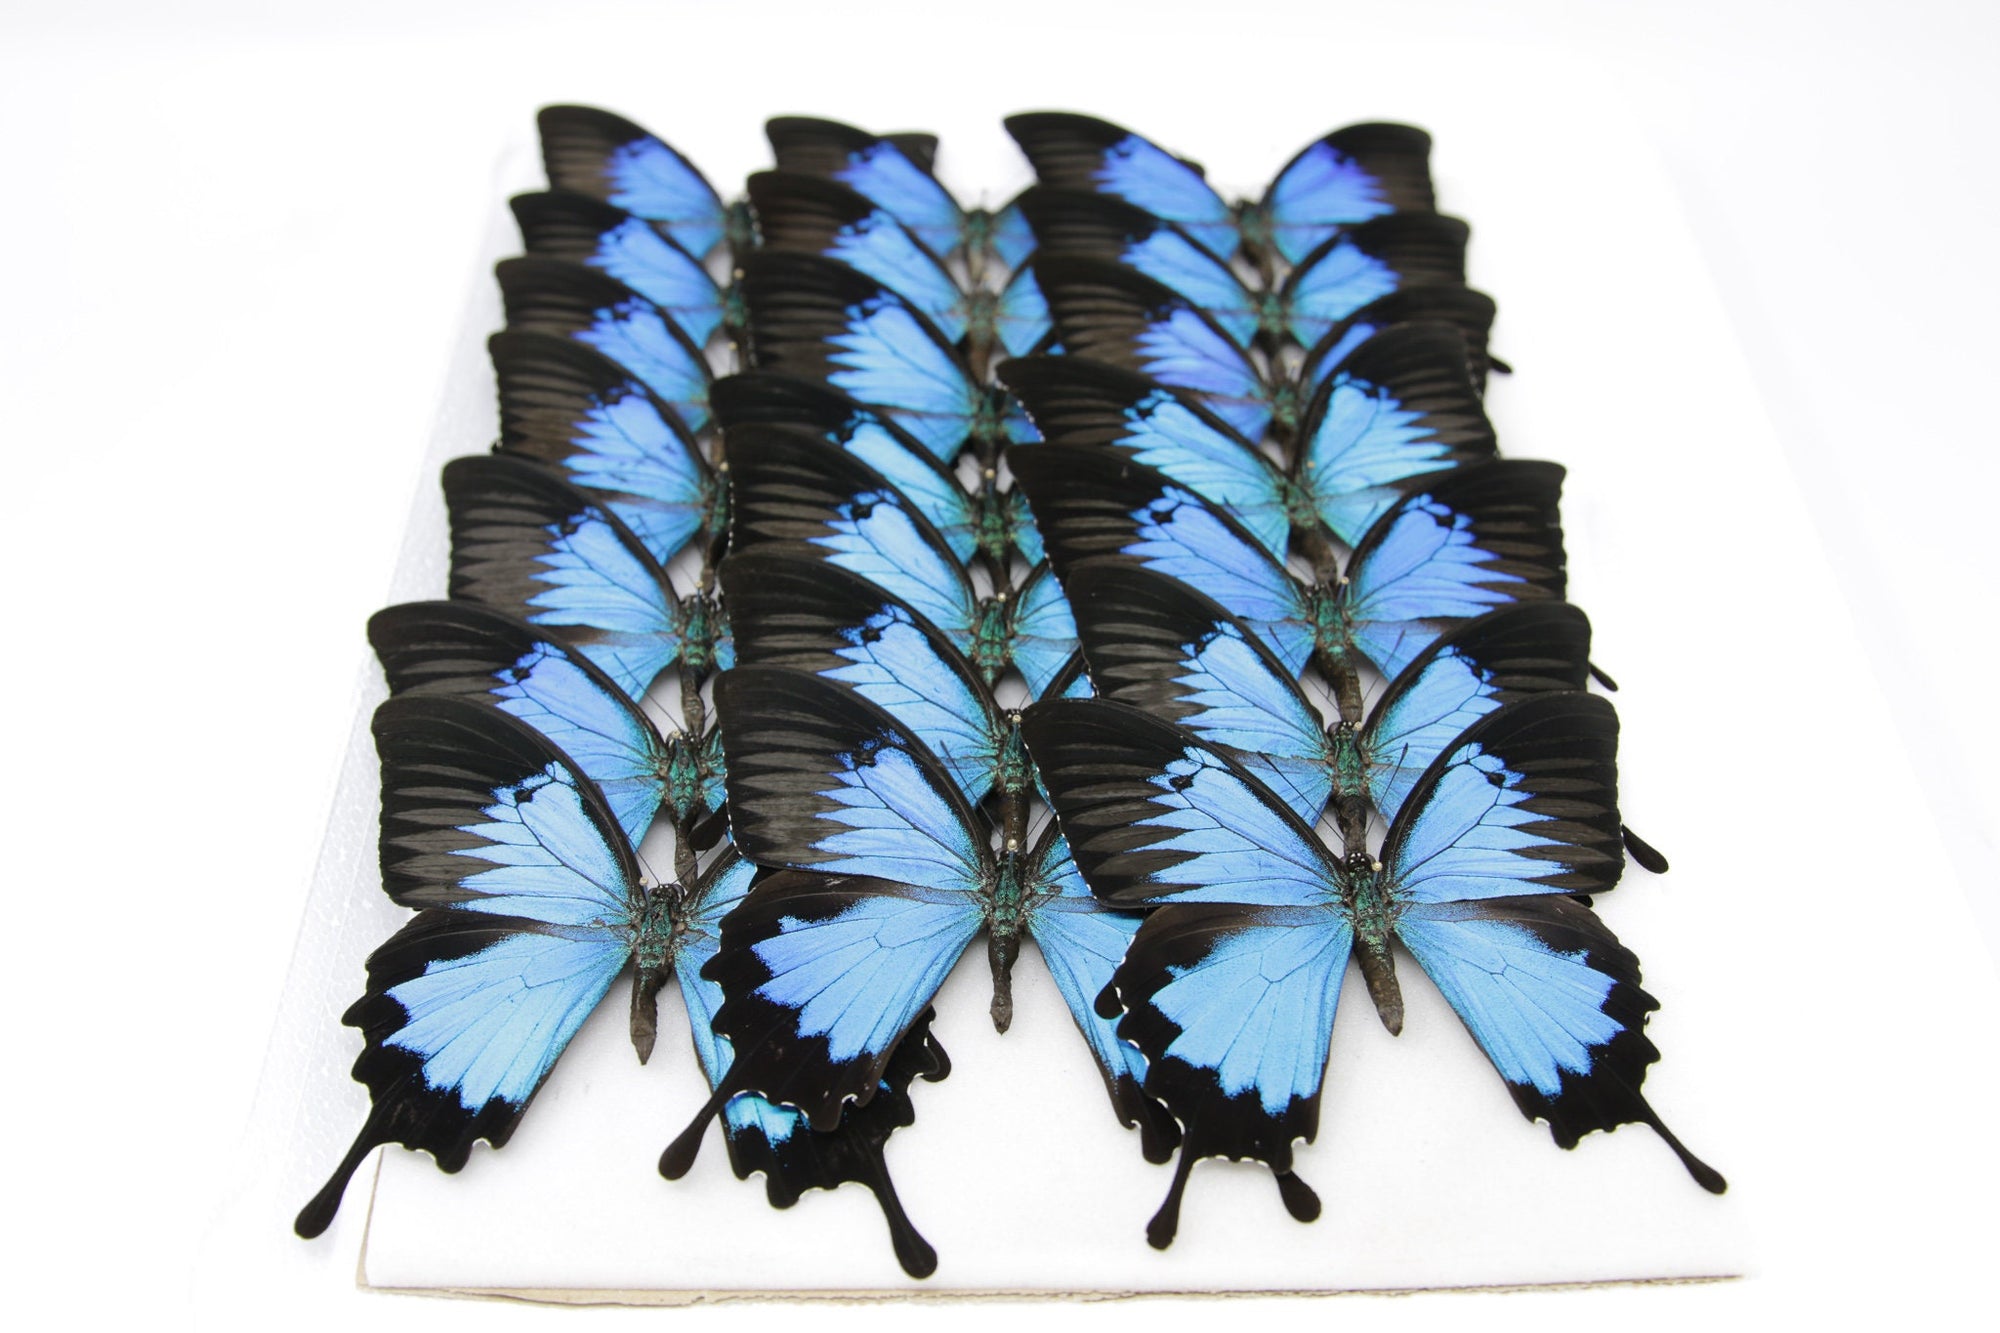 10 WINGS OPEN Blue Ulysses Swallowtail (Papilio ulysses) A1 Butterfly Spread Specimen Pinned in Box